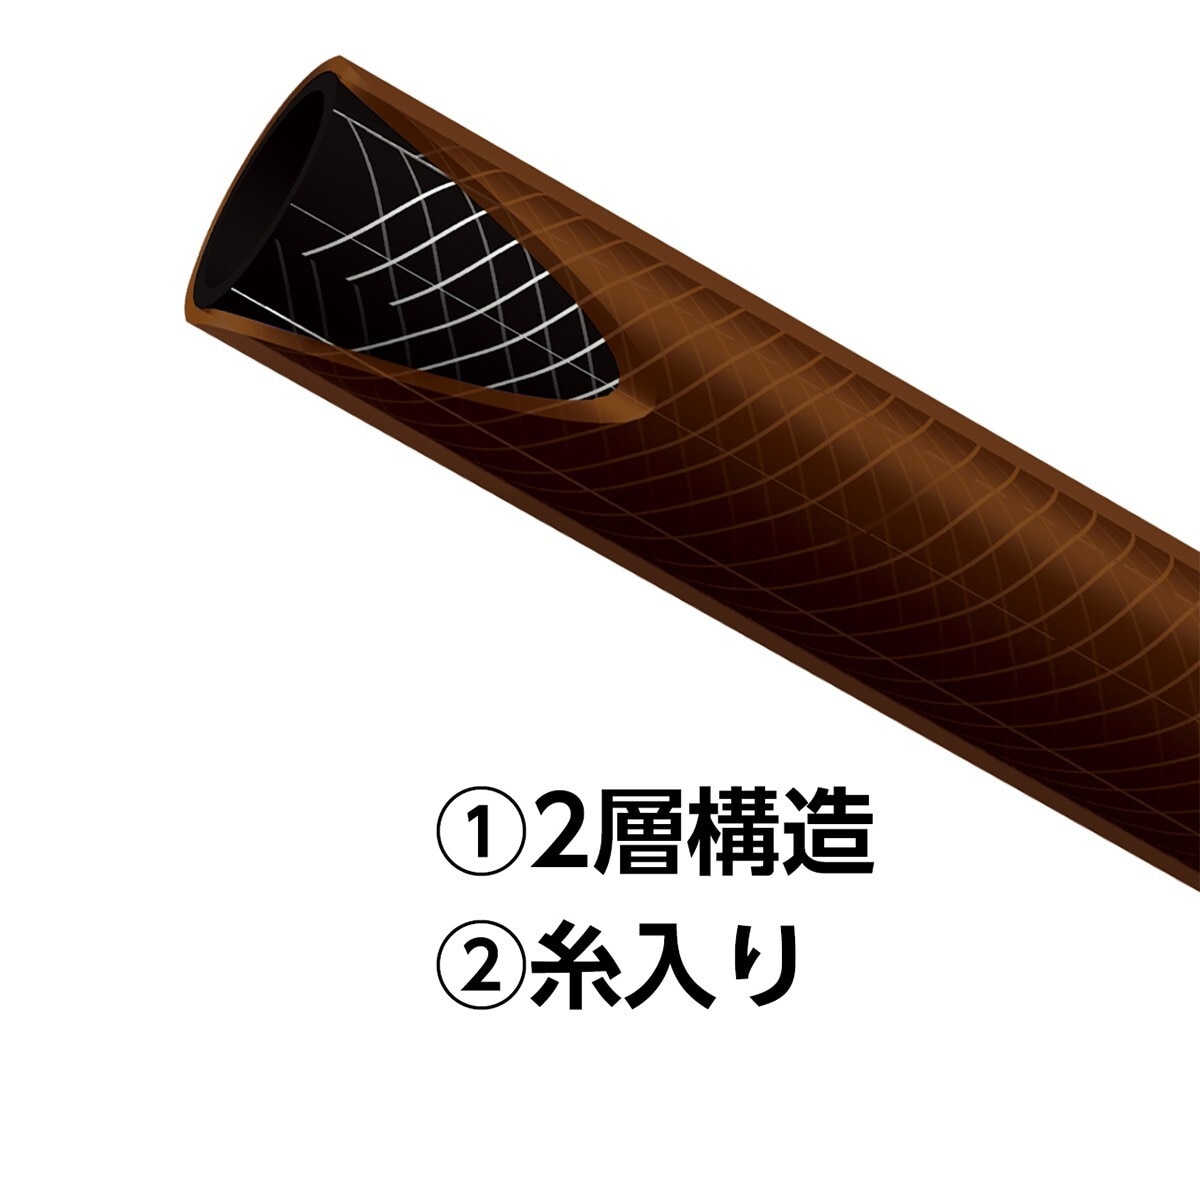 Takagi 水管組 7.5公尺